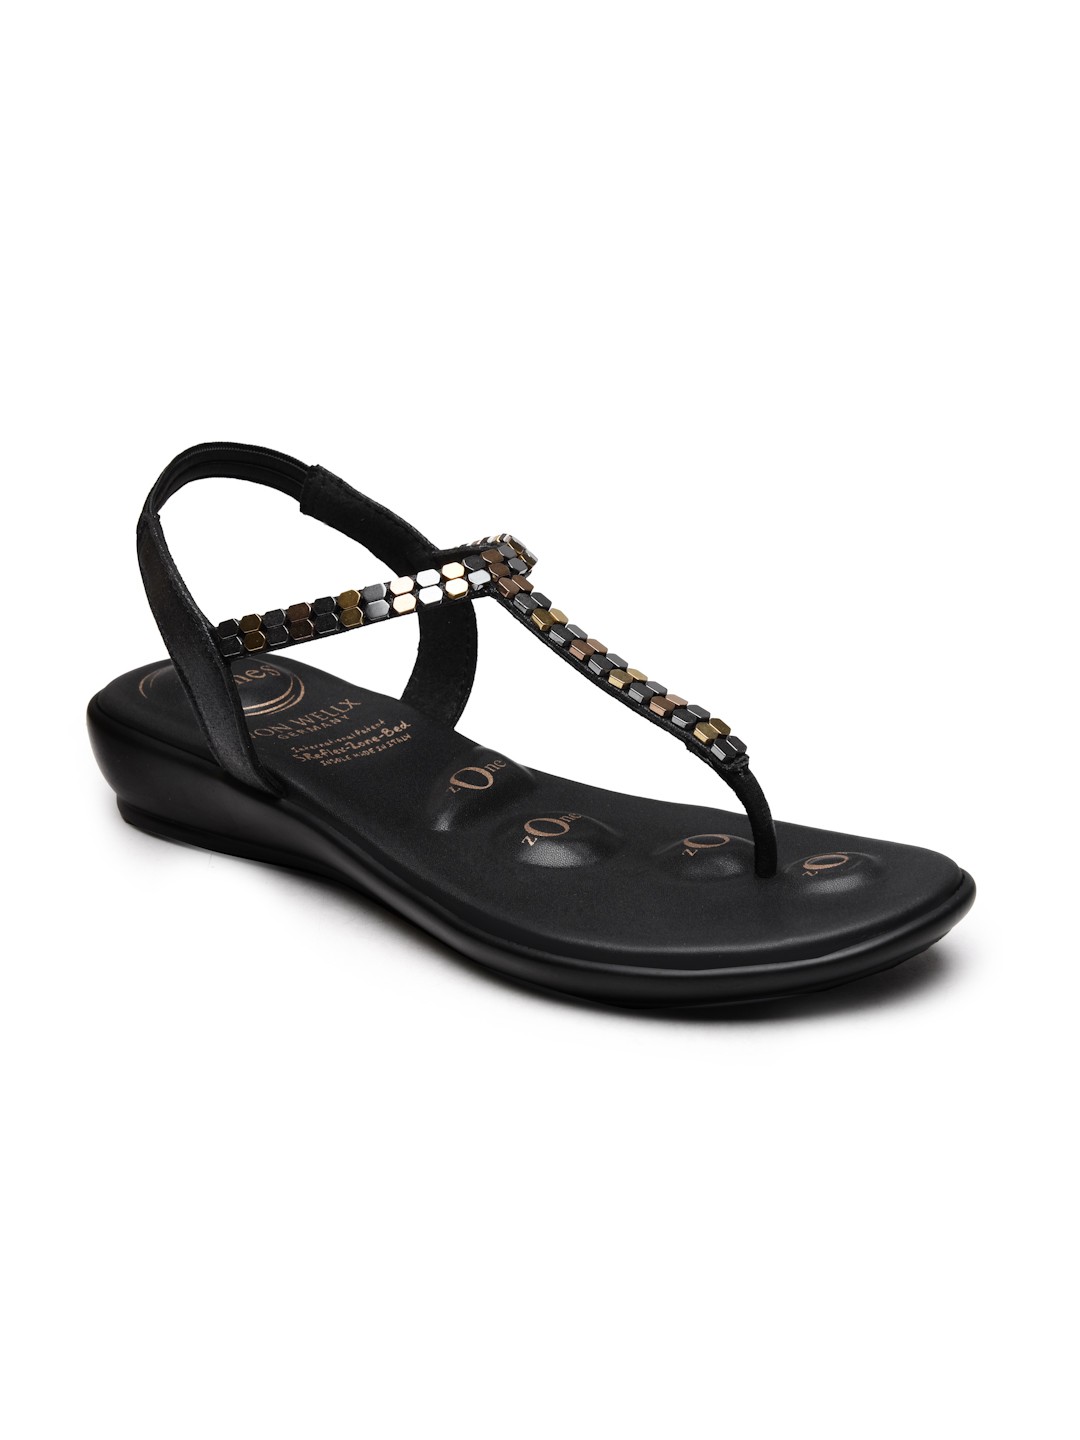 Buy Von Wellx Germany Comfort Women's Black Casual Sandals Regina Online in Riyadh